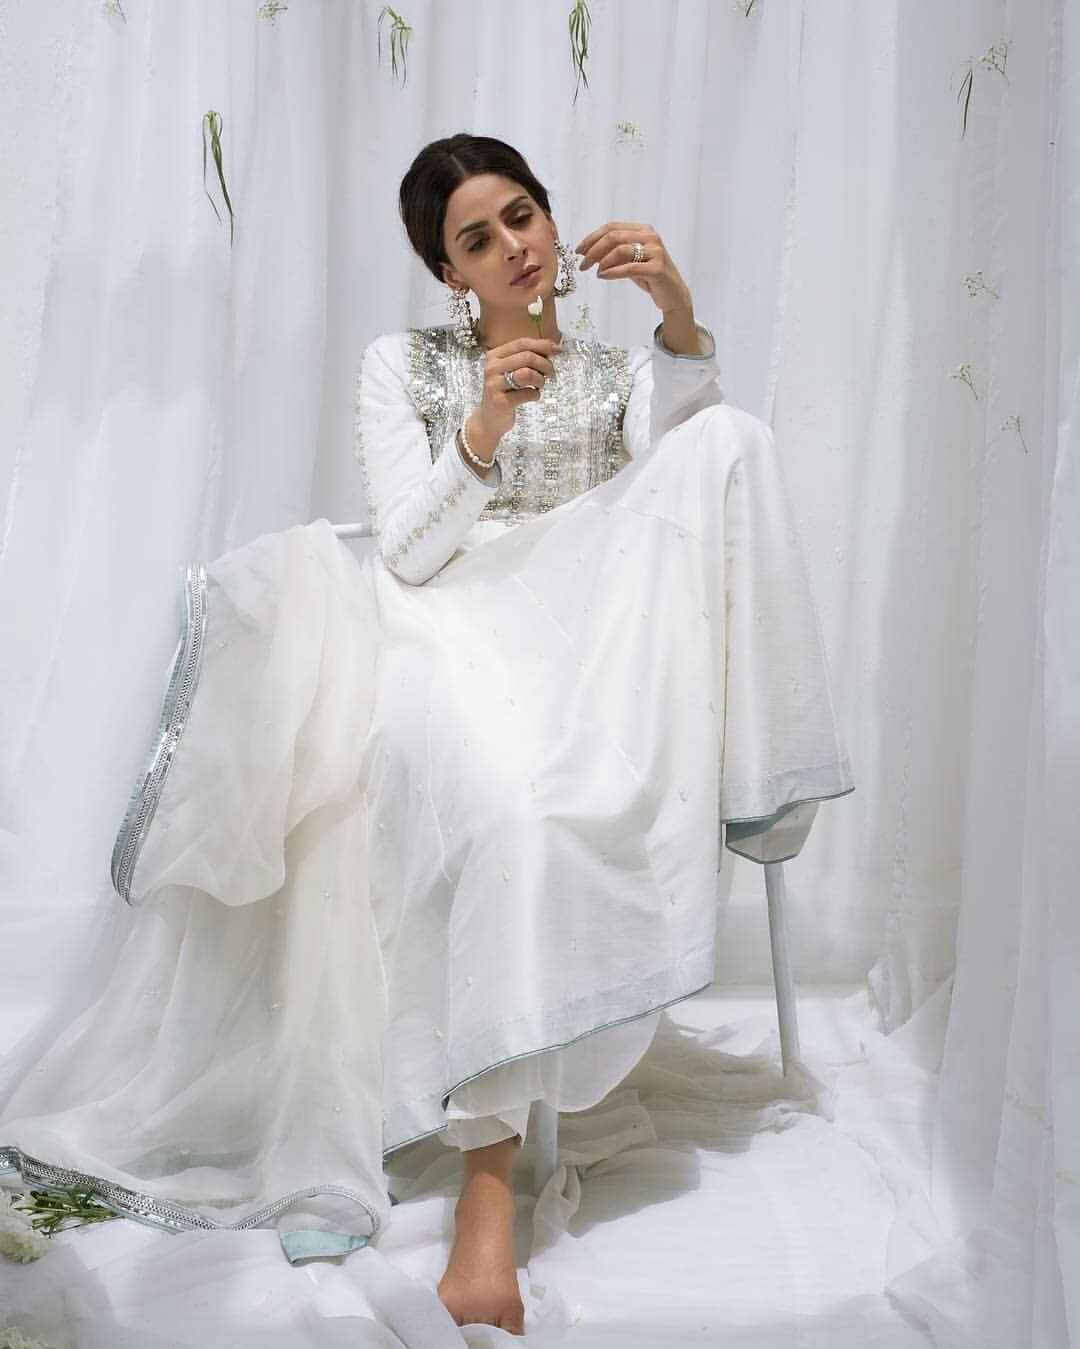 Gorgeous Saba Qamar Looking Stunning in White